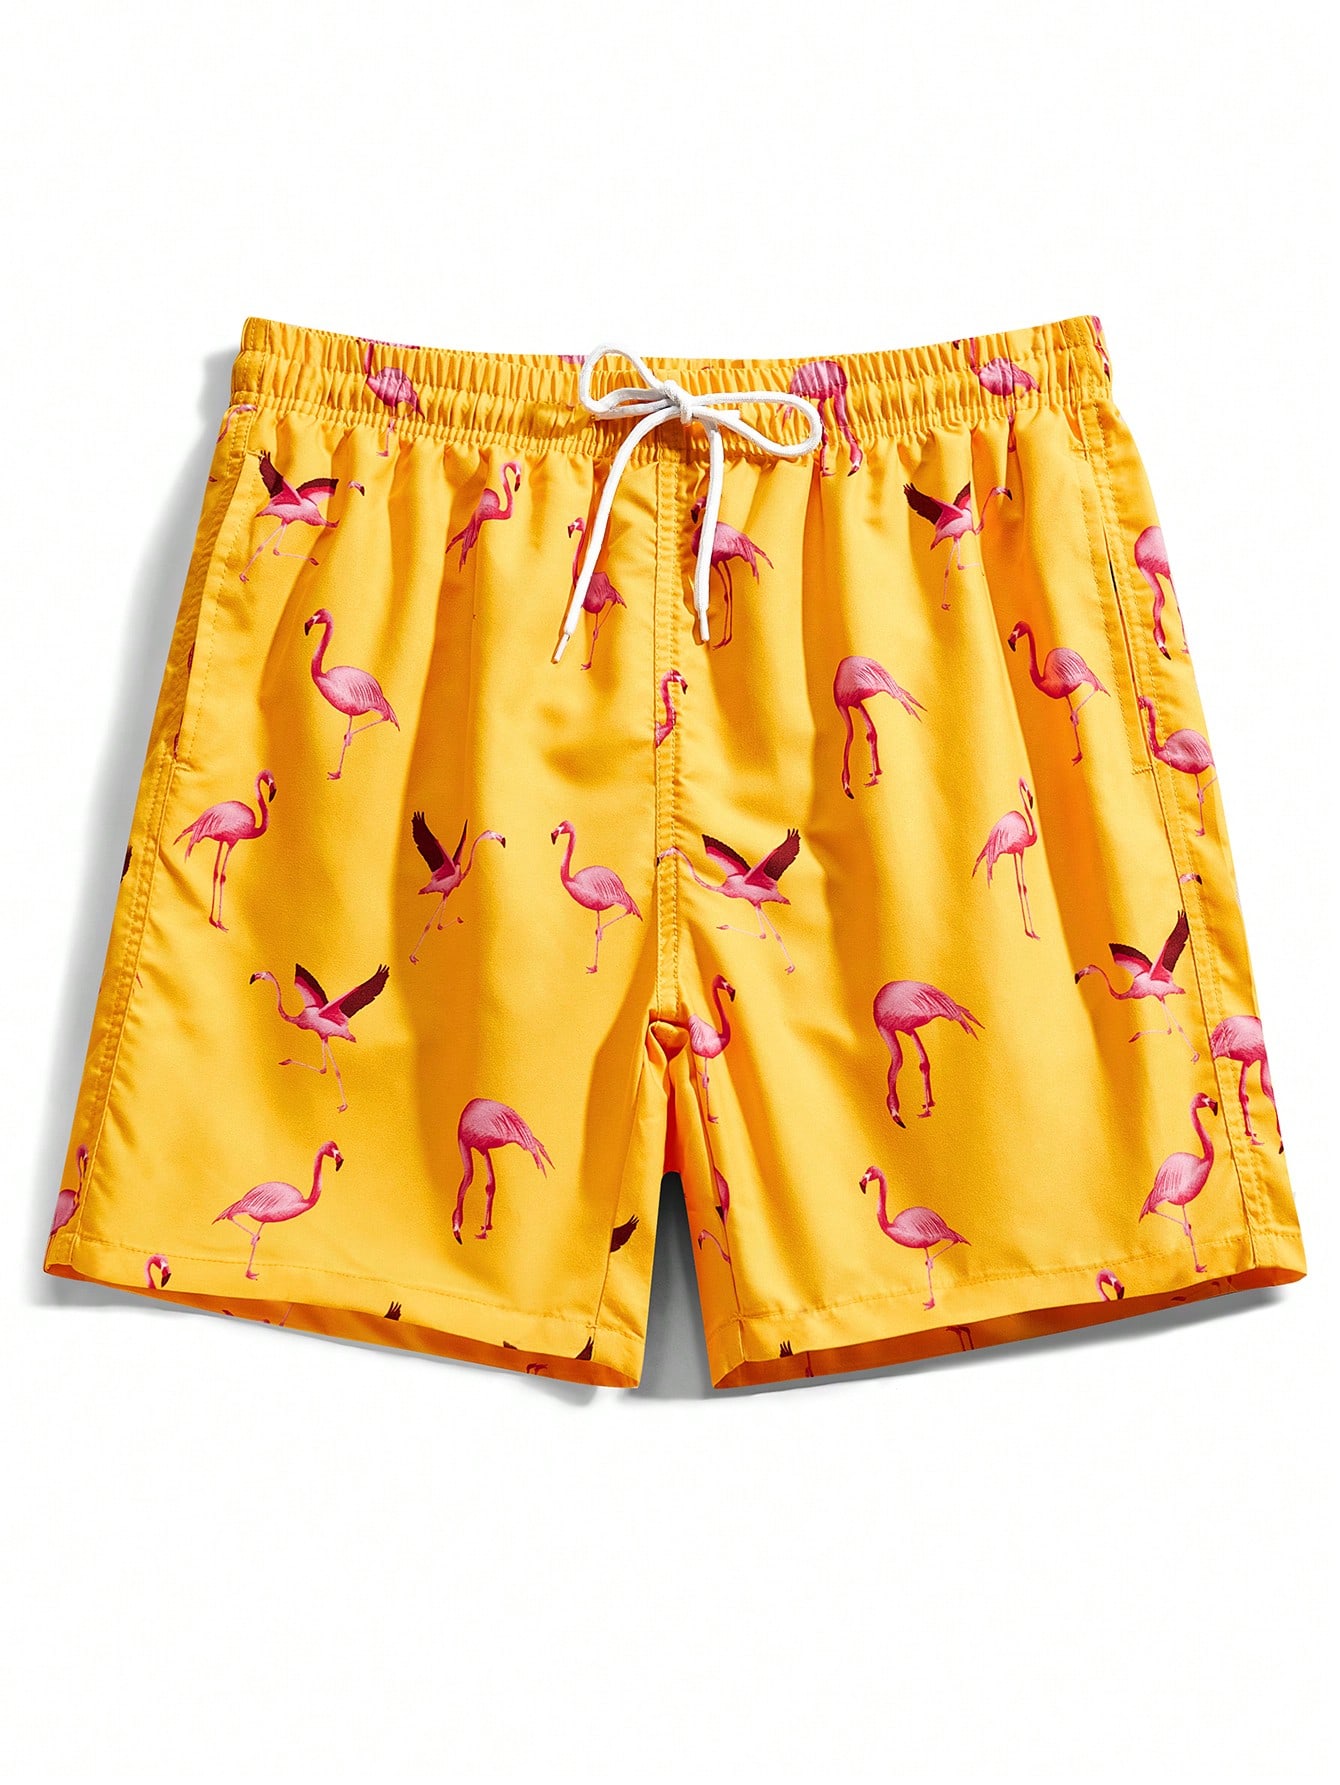 Мужские пляжные шорты Manfinity с принтом фламинго и завязками на талии, желтый